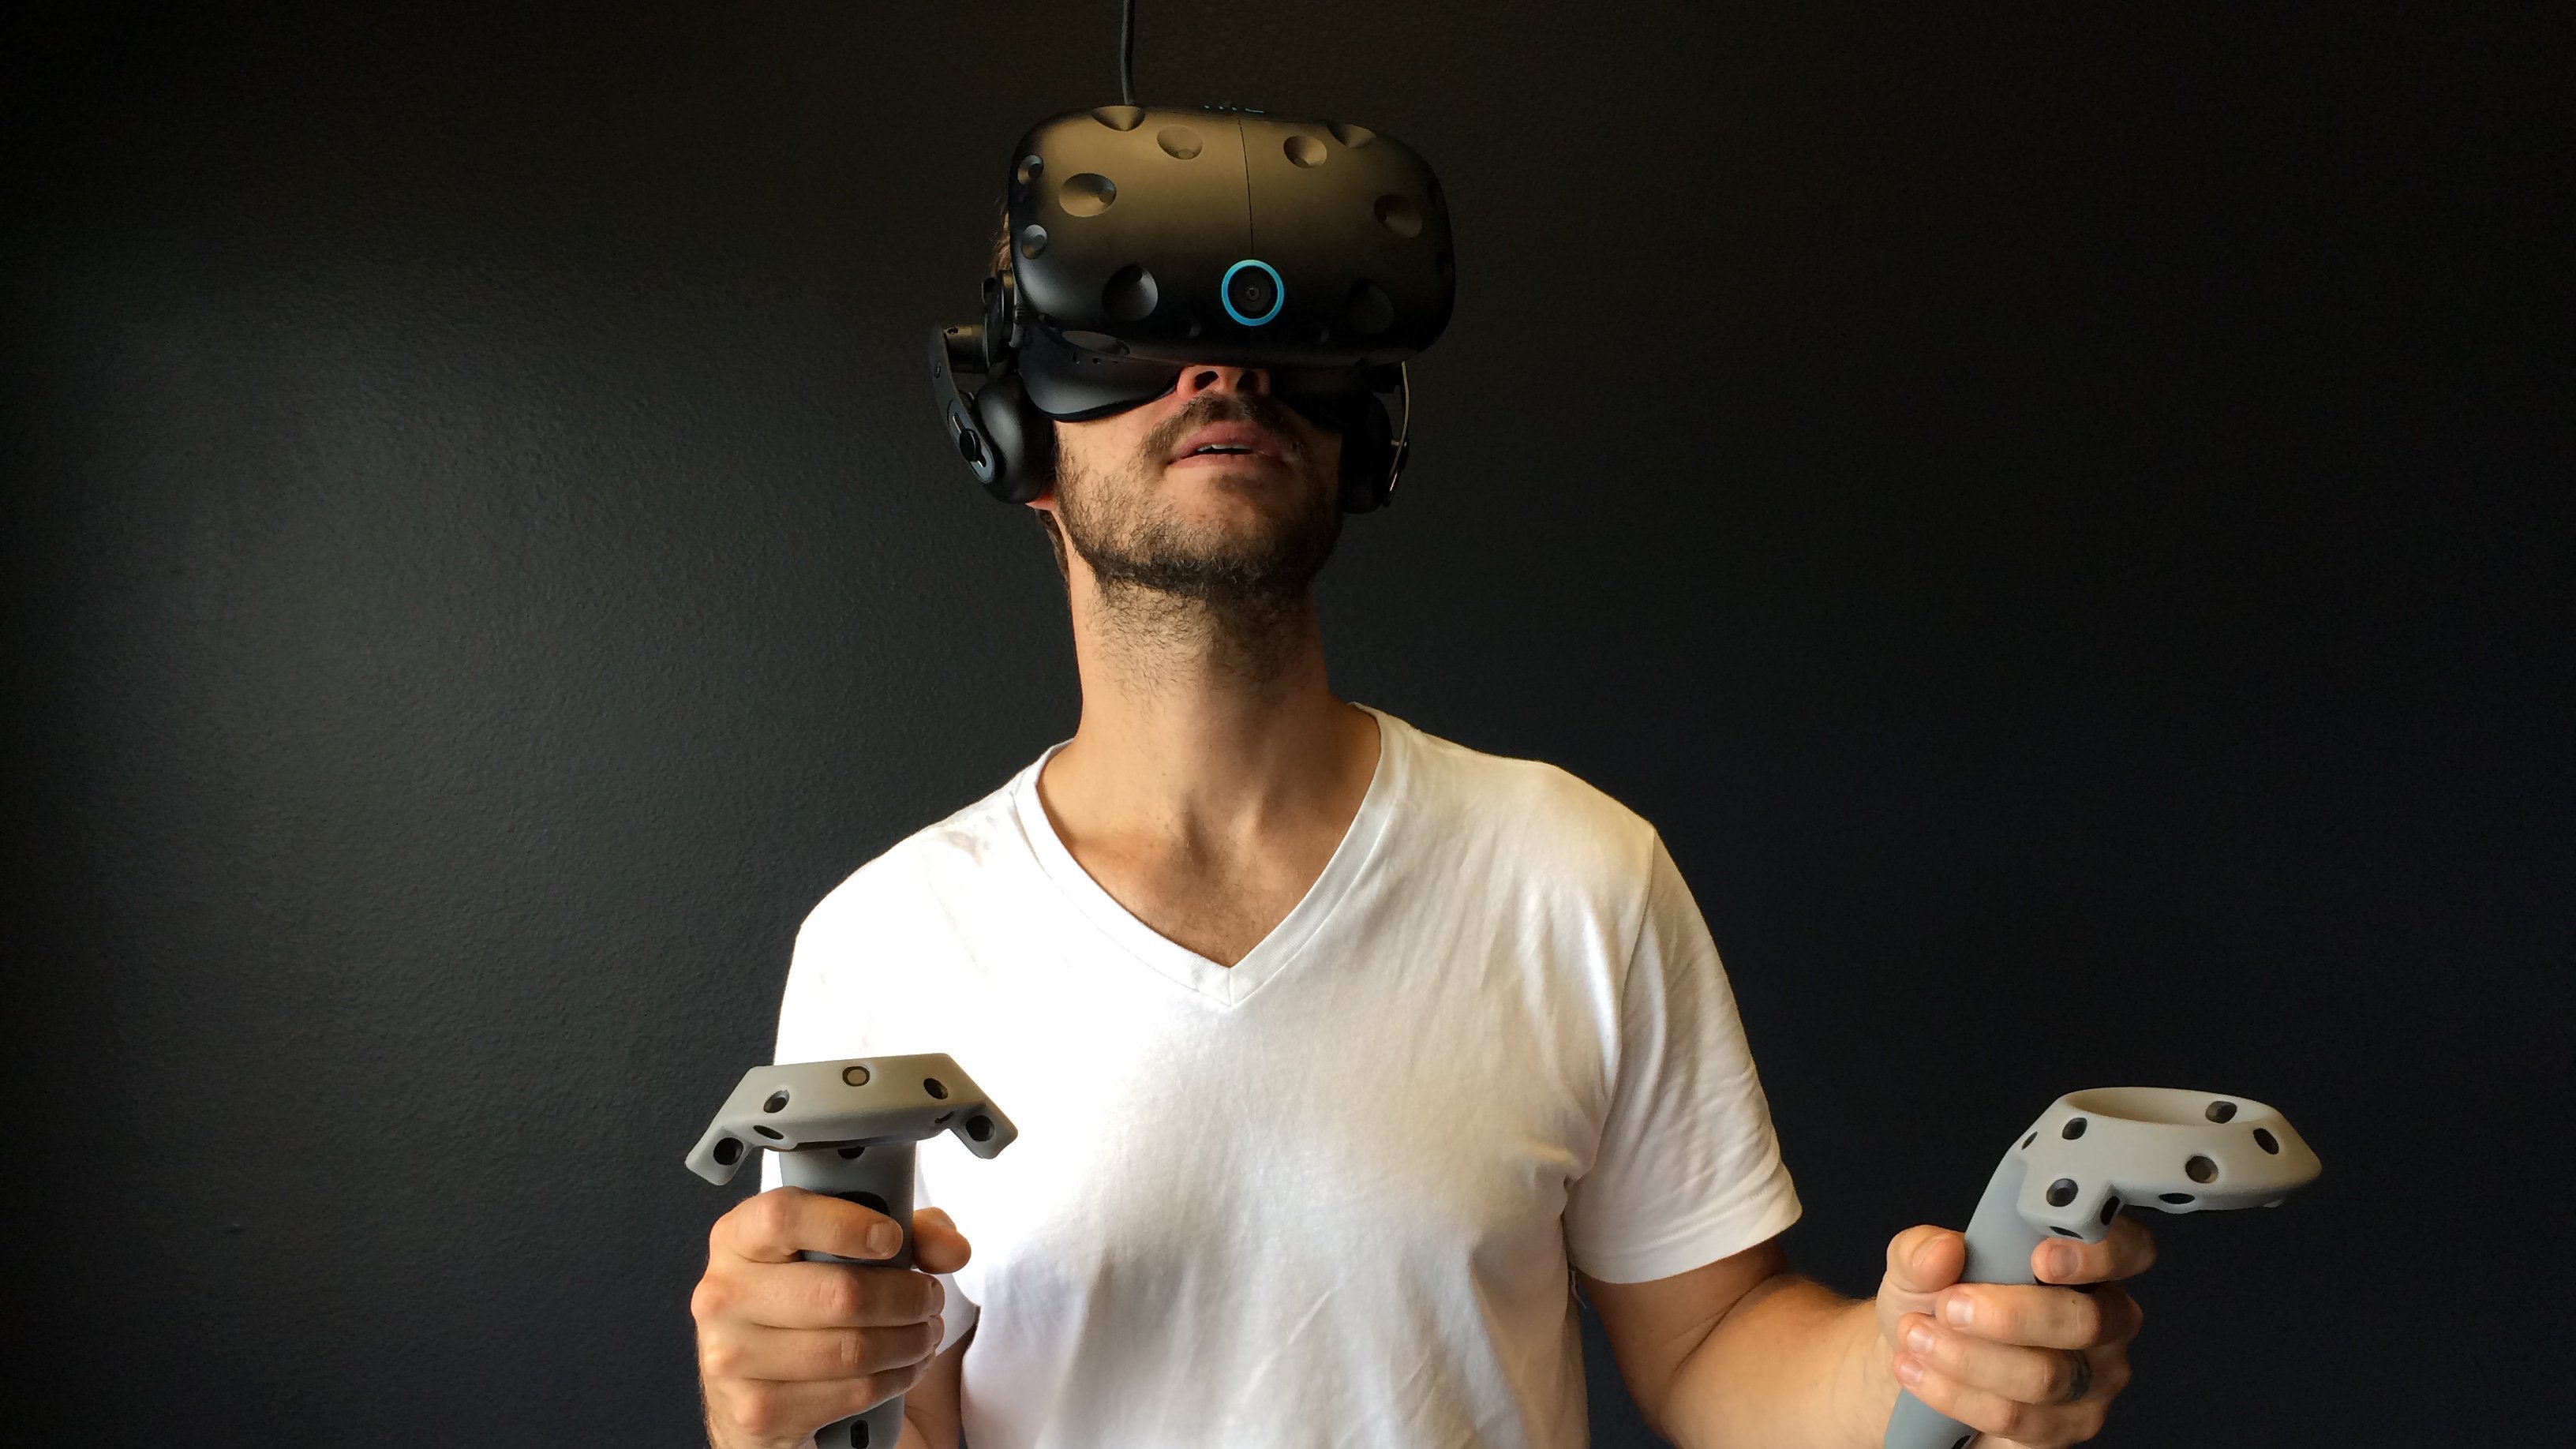 Vr type. VR шлем c 360. VR шлем 360max. Шлемы и очки / head Mounted display, HMD. Шлем/очки виртуальной реальности (HMD – head Mounted display)..